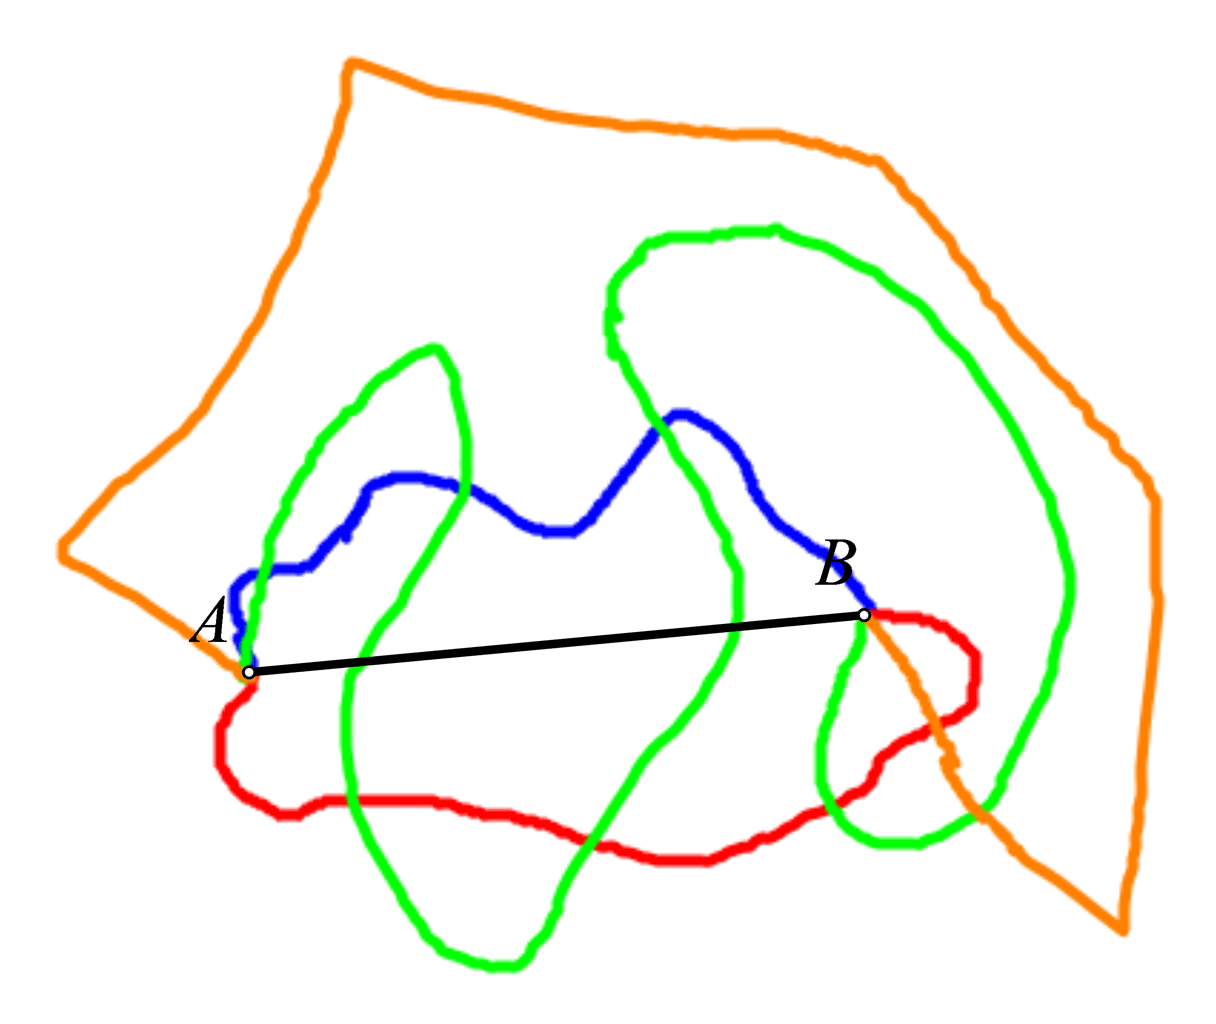 Slika prikazuje nekoliko različitih načina spajanja dvije različite točke A i B